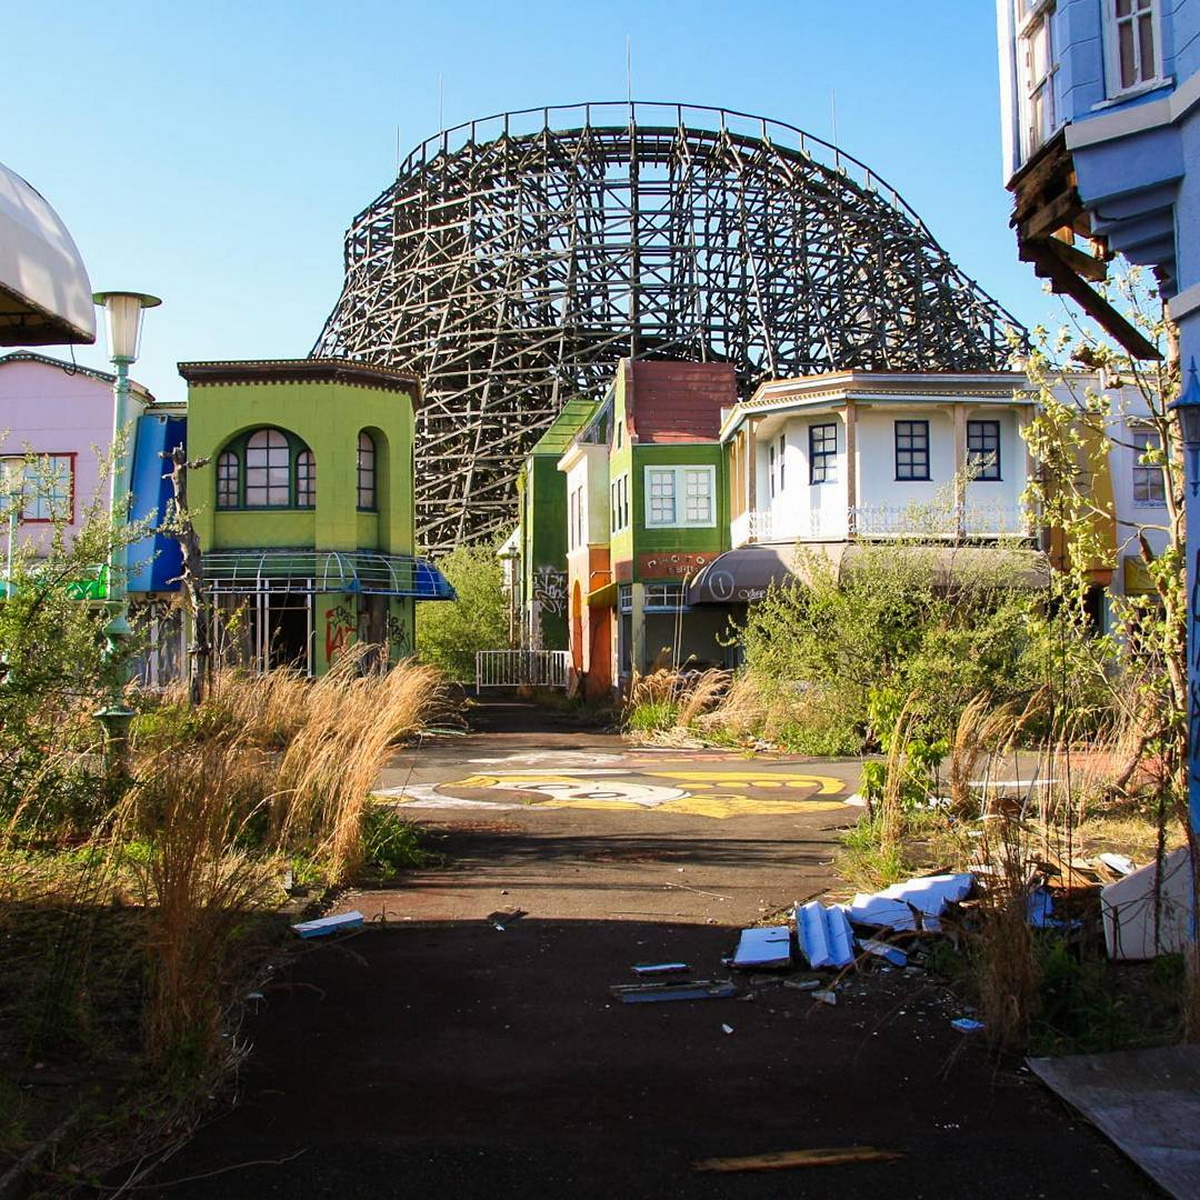 Заброшенный тематический парк в Японии, который уже снесли